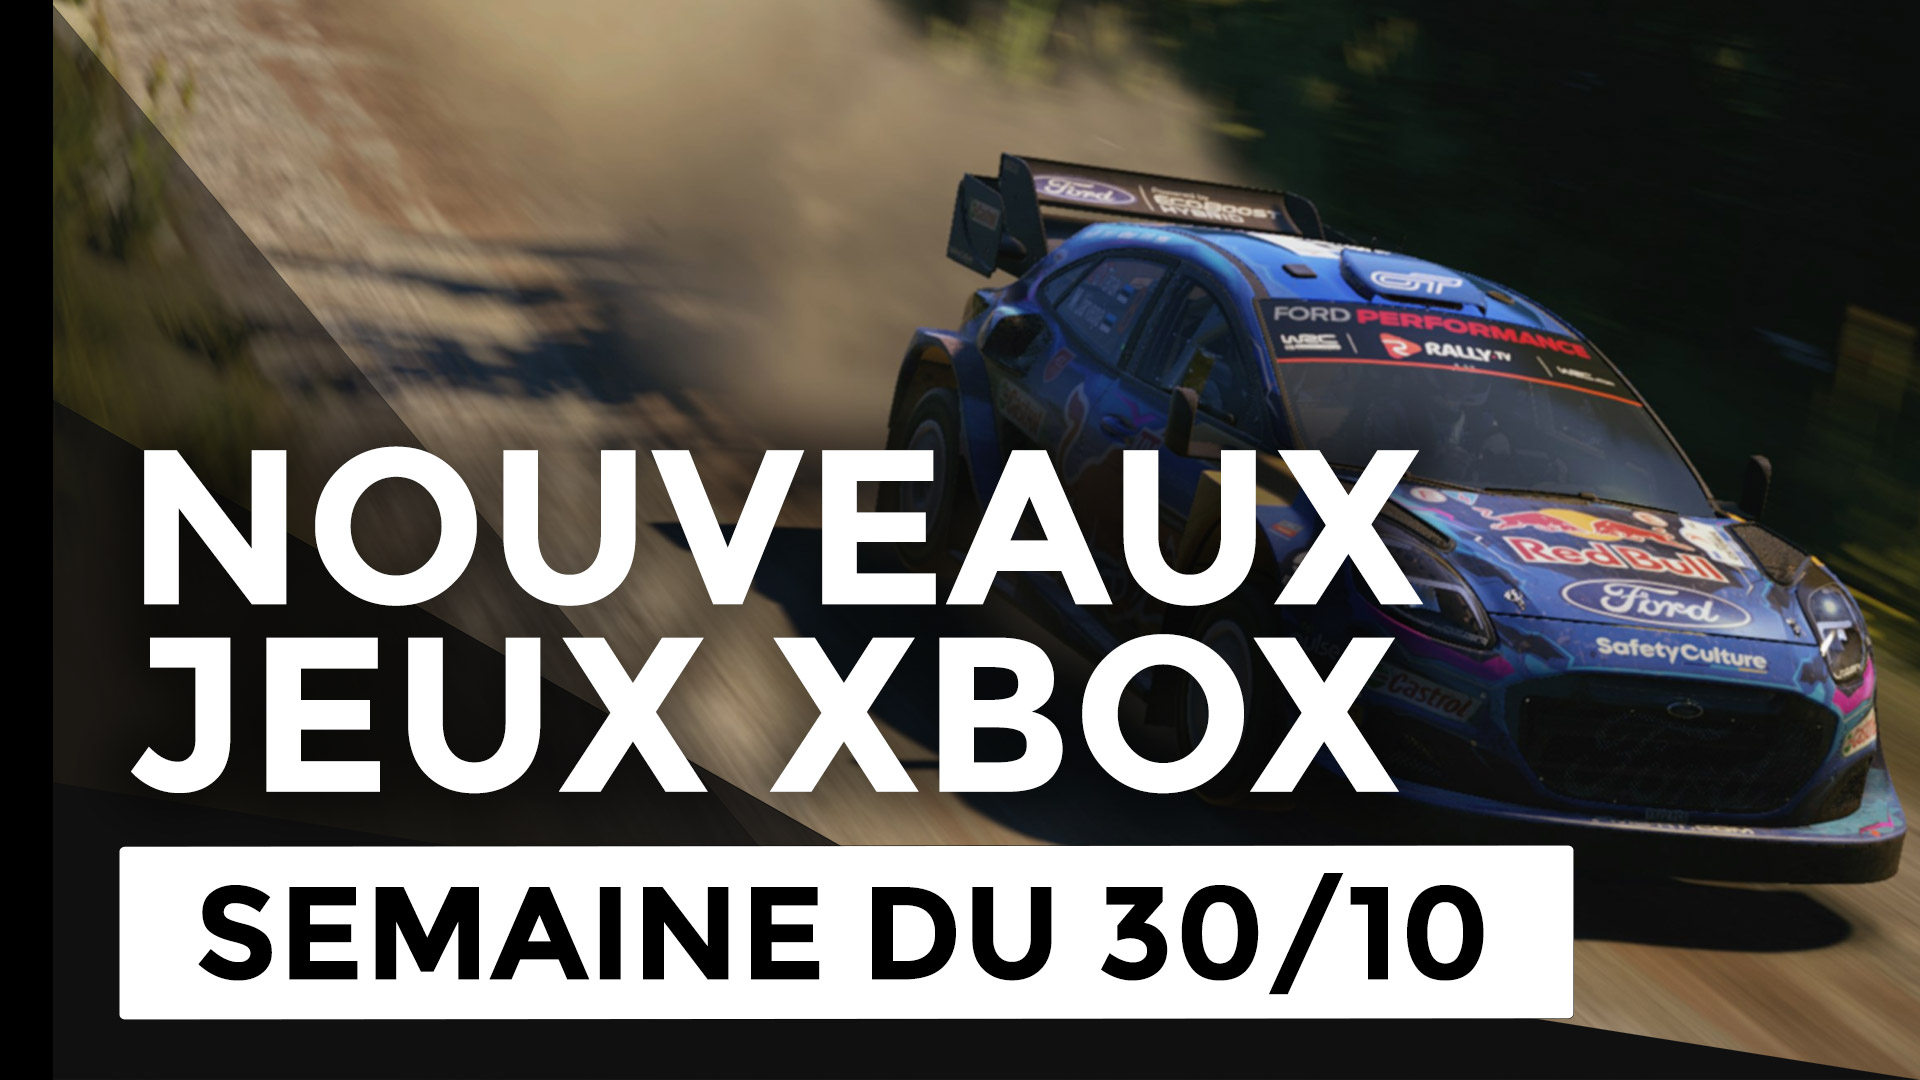 Dirt Rally 2.0 Deluxe Édition Jeu PS4 - Cdiscount Jeux vidéo